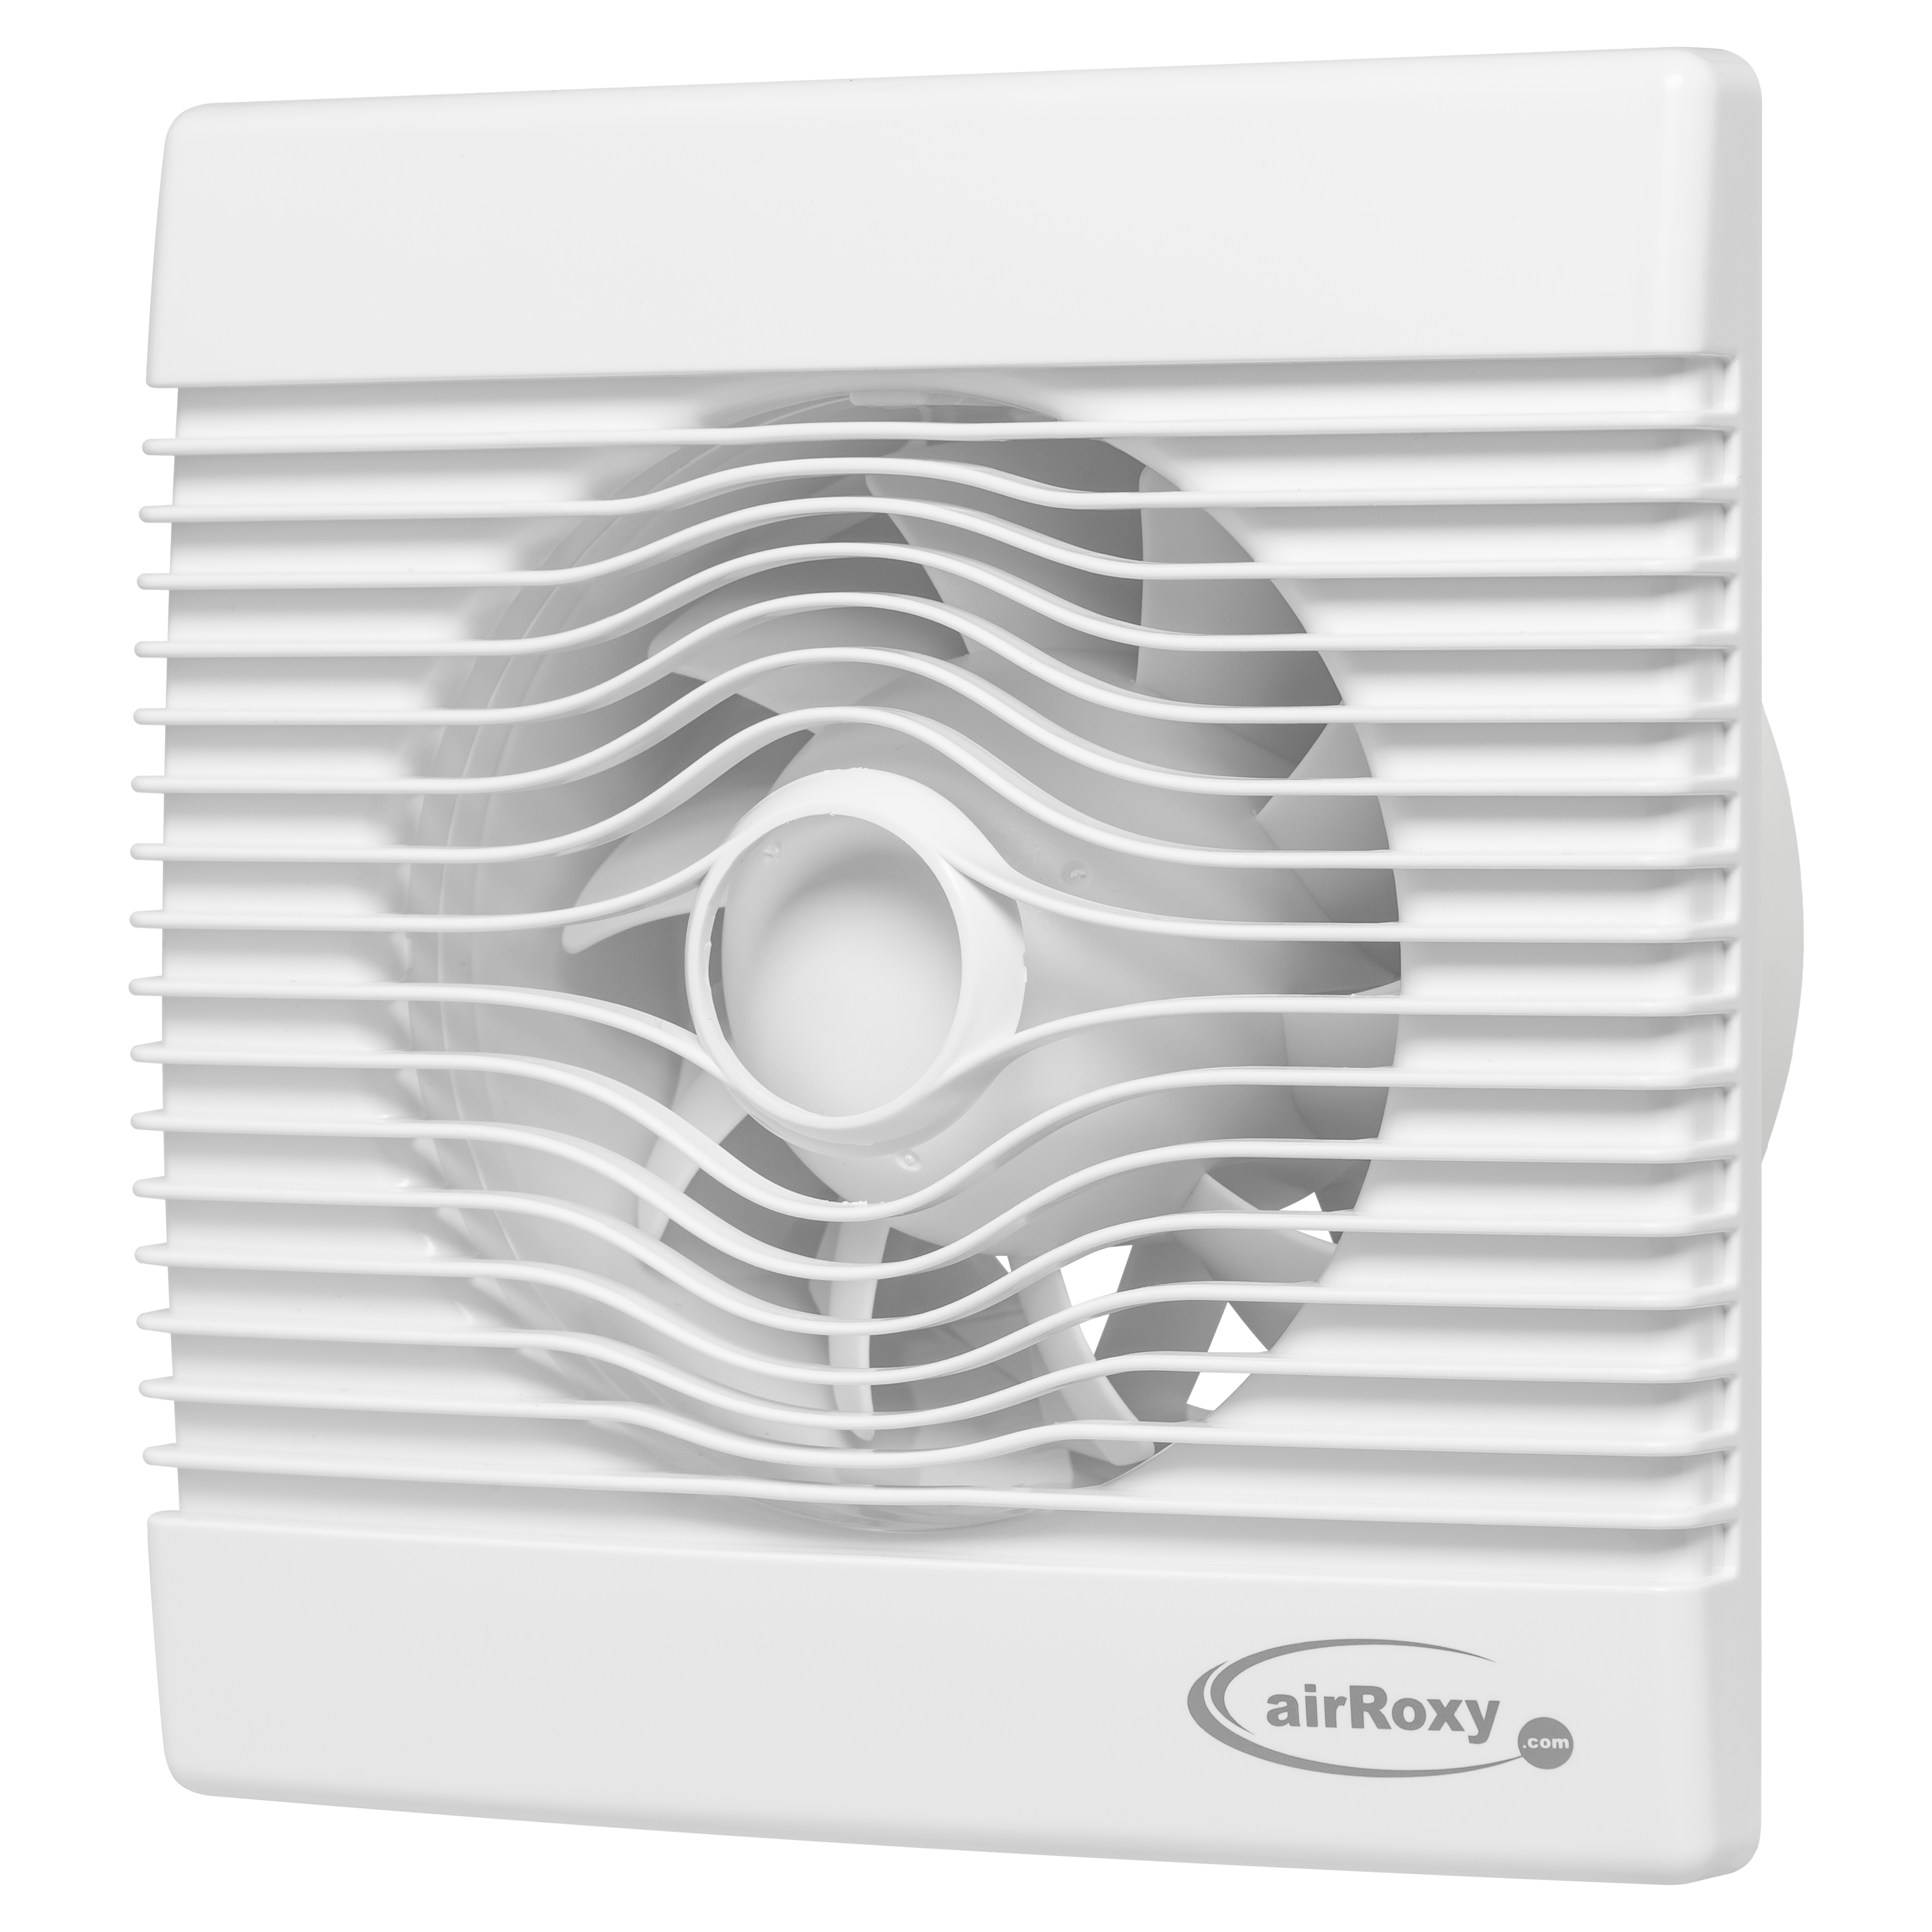 Вытяжной вентилятор AirRoxy pRemium 120 TS (01-019) в интернет-магазине, главное фото